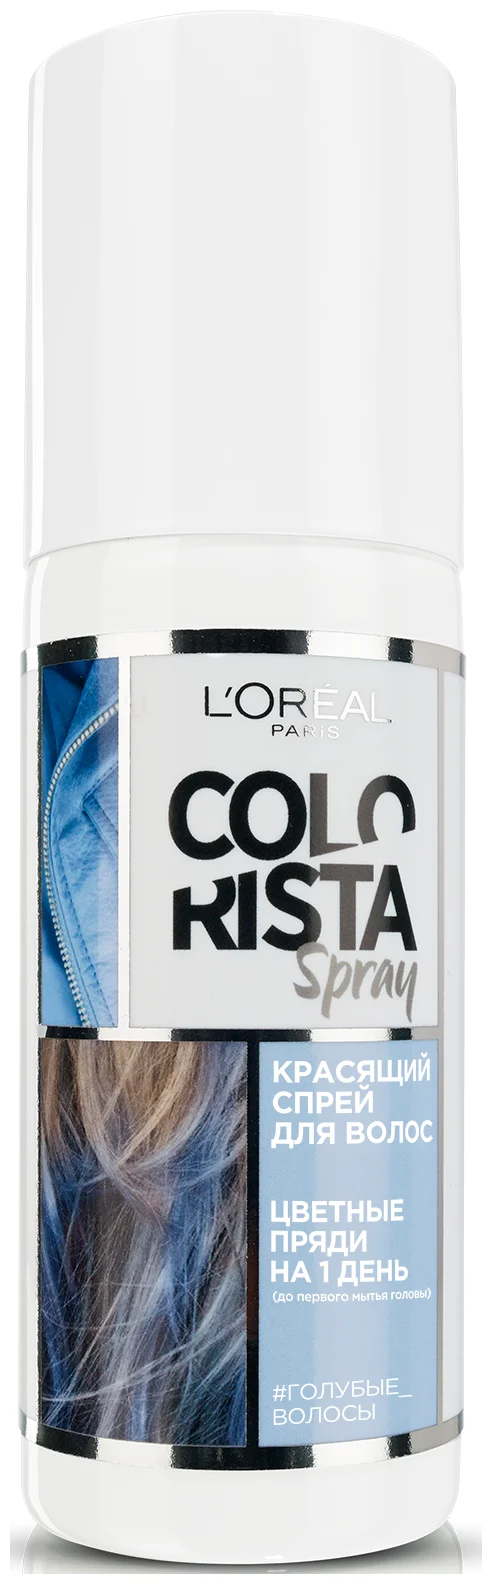 L'Oreal Paris Colorista Spray, оттенок Голубые Волосы - потребности кожи головы и волос: тонирование